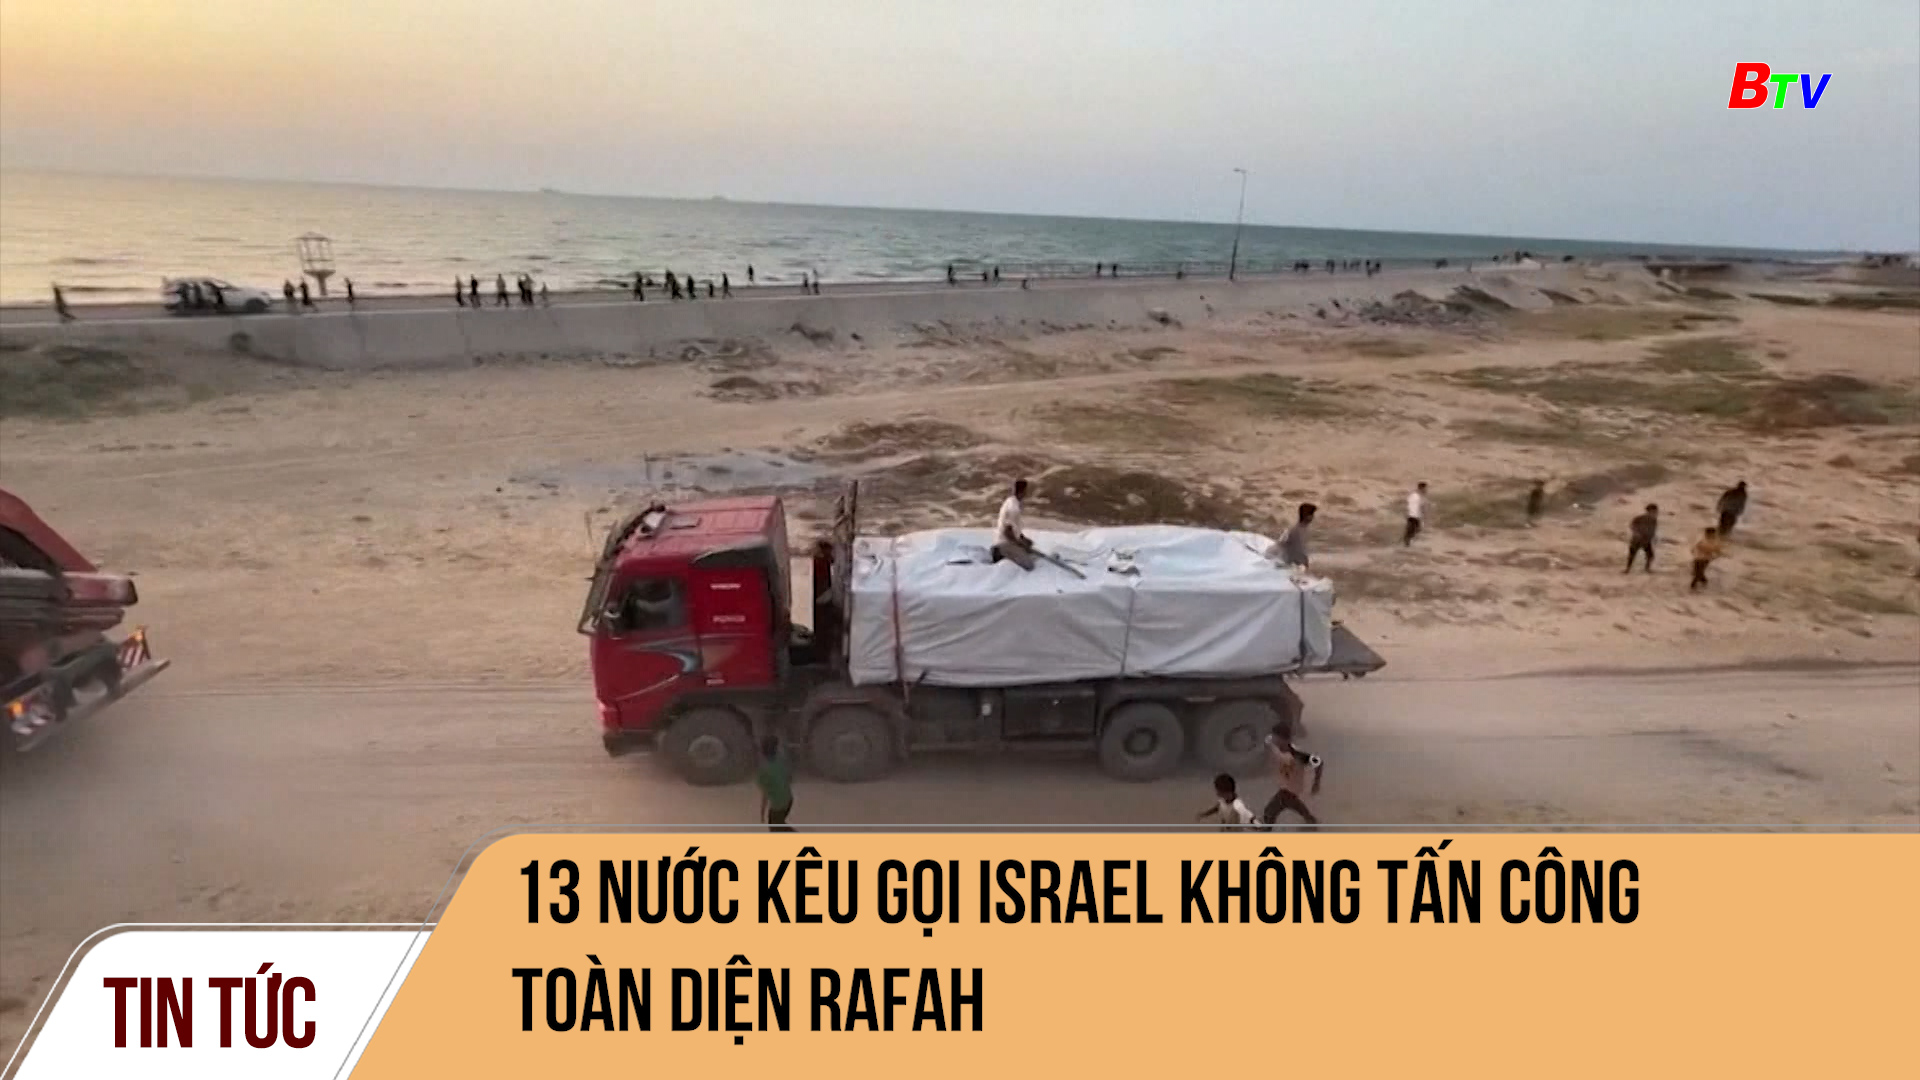 13 nước kêu gọi Israel không tấn công toàn diện Rafah